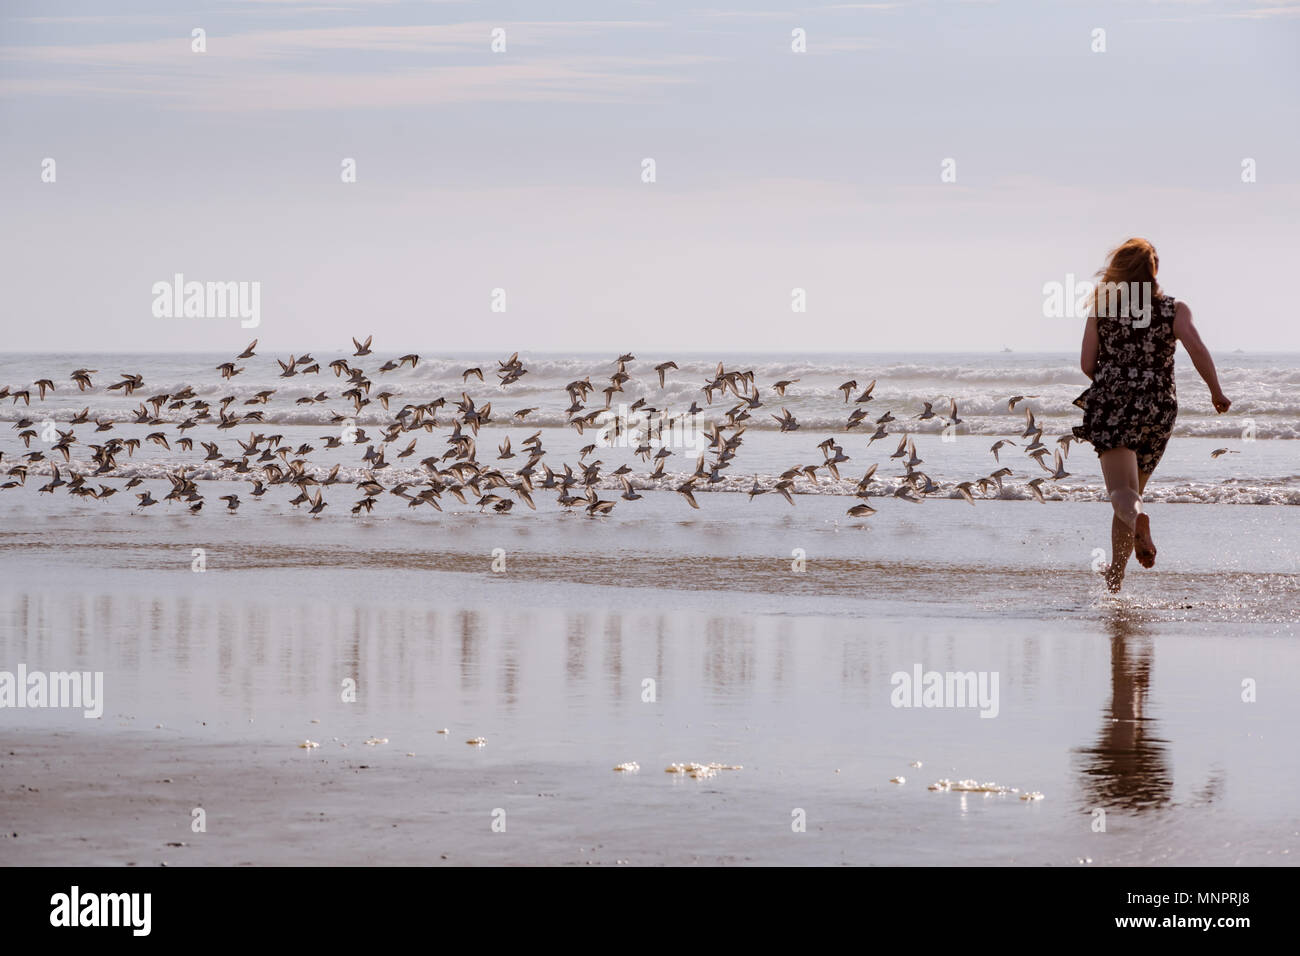 Frau läuft auf nassem Sand jagen Sandpiper Vögel, Spaß haben, spielend am Strand. Stockfoto